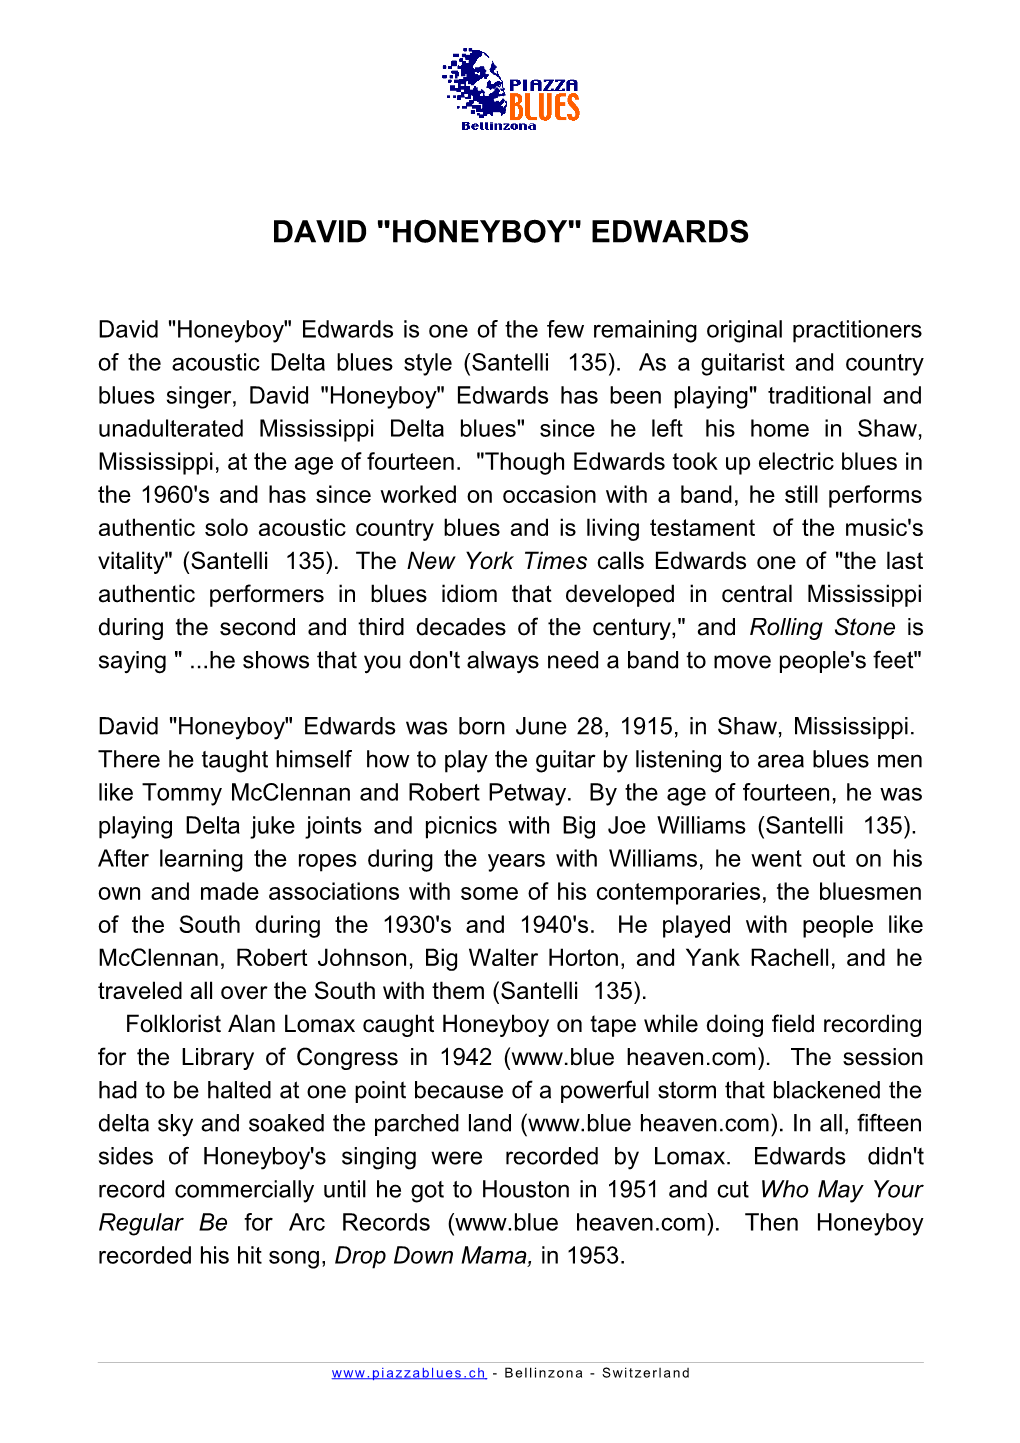 David Honeyboy Edwards